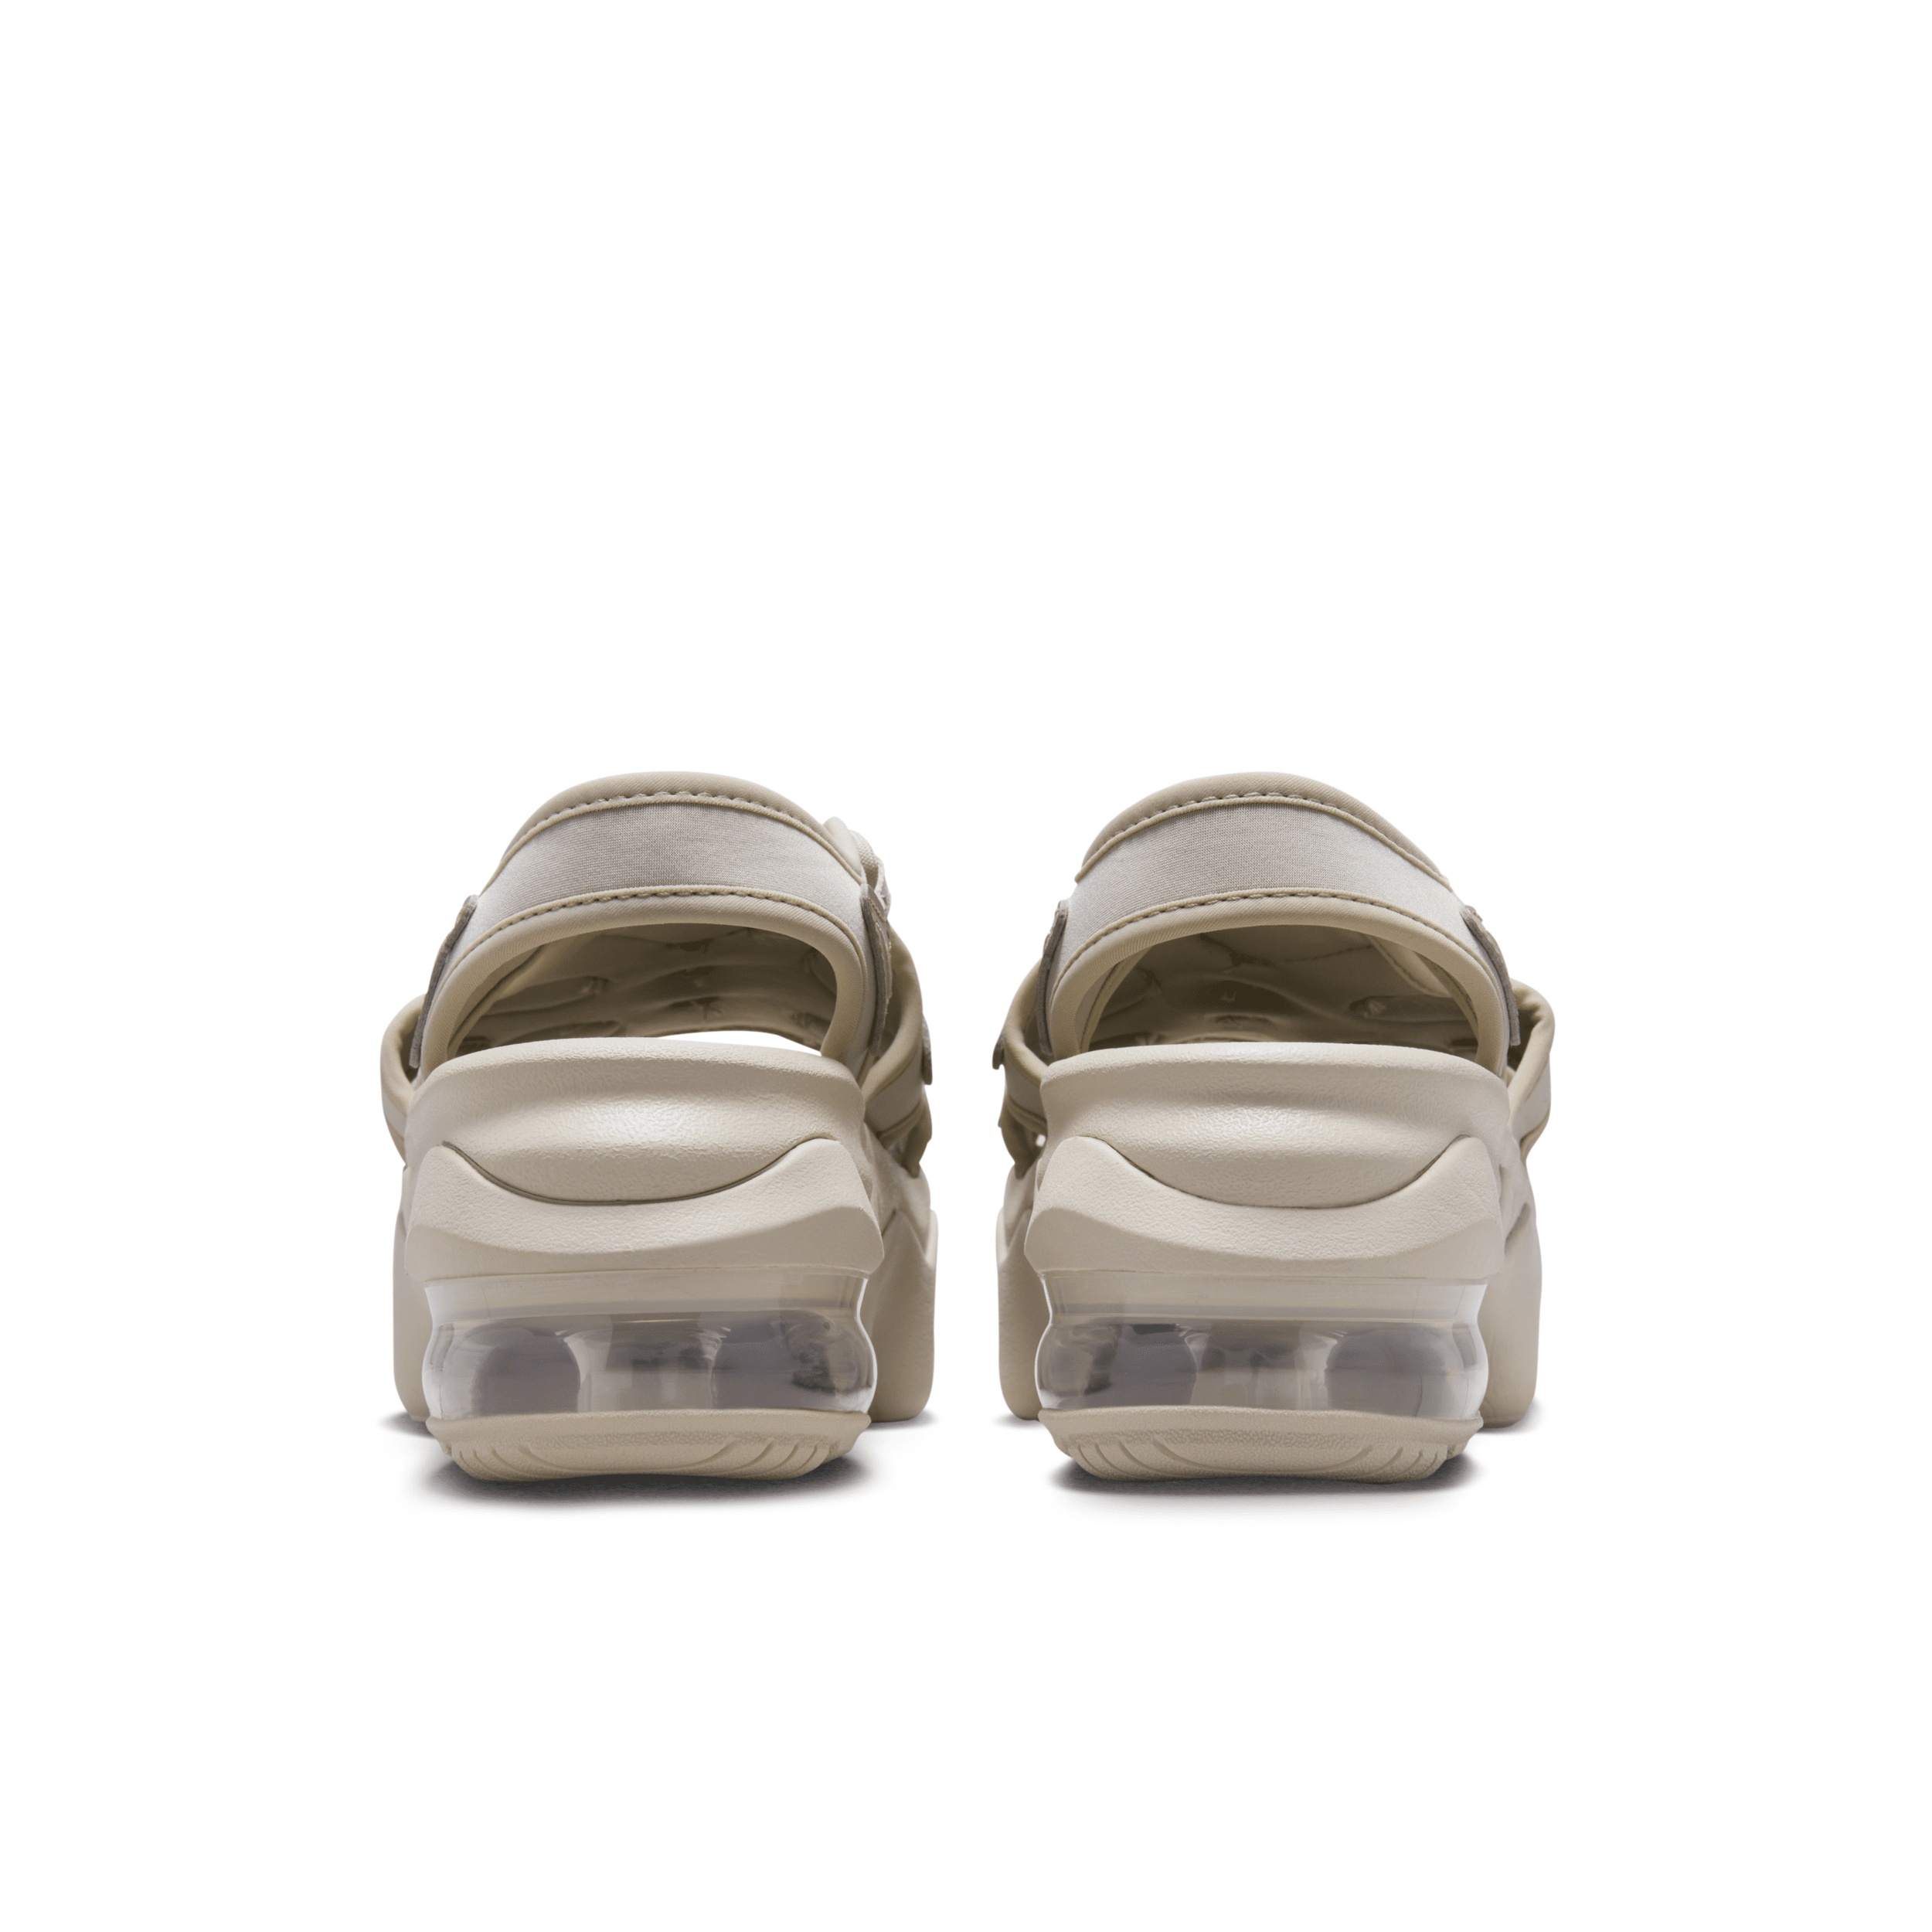 Nike Women's Air Max Koko Sandals - 7